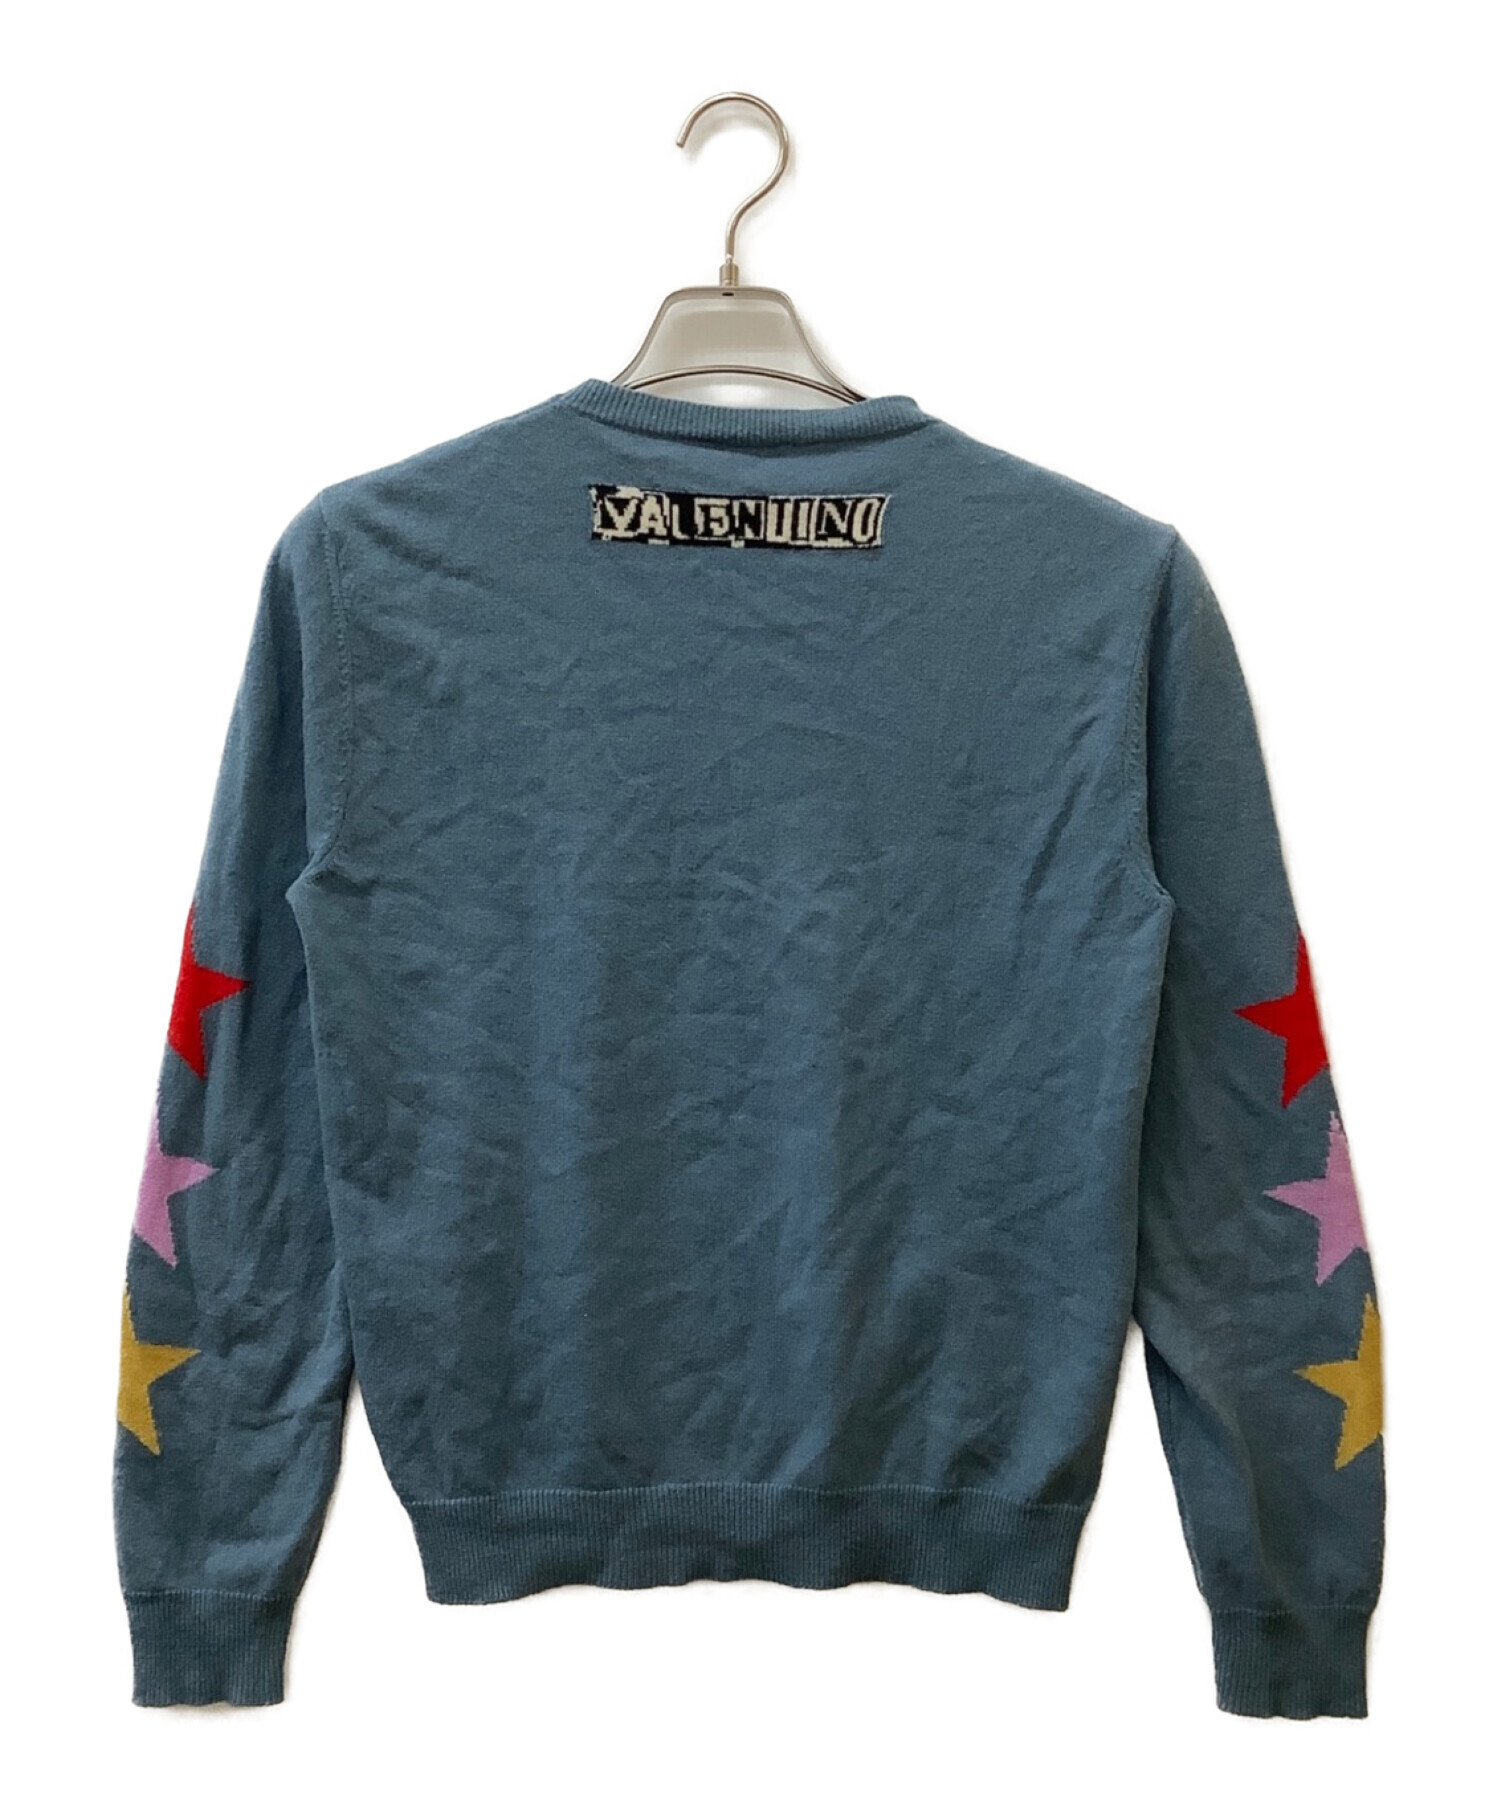 バレンチノ 長袖セーター サイズXS -